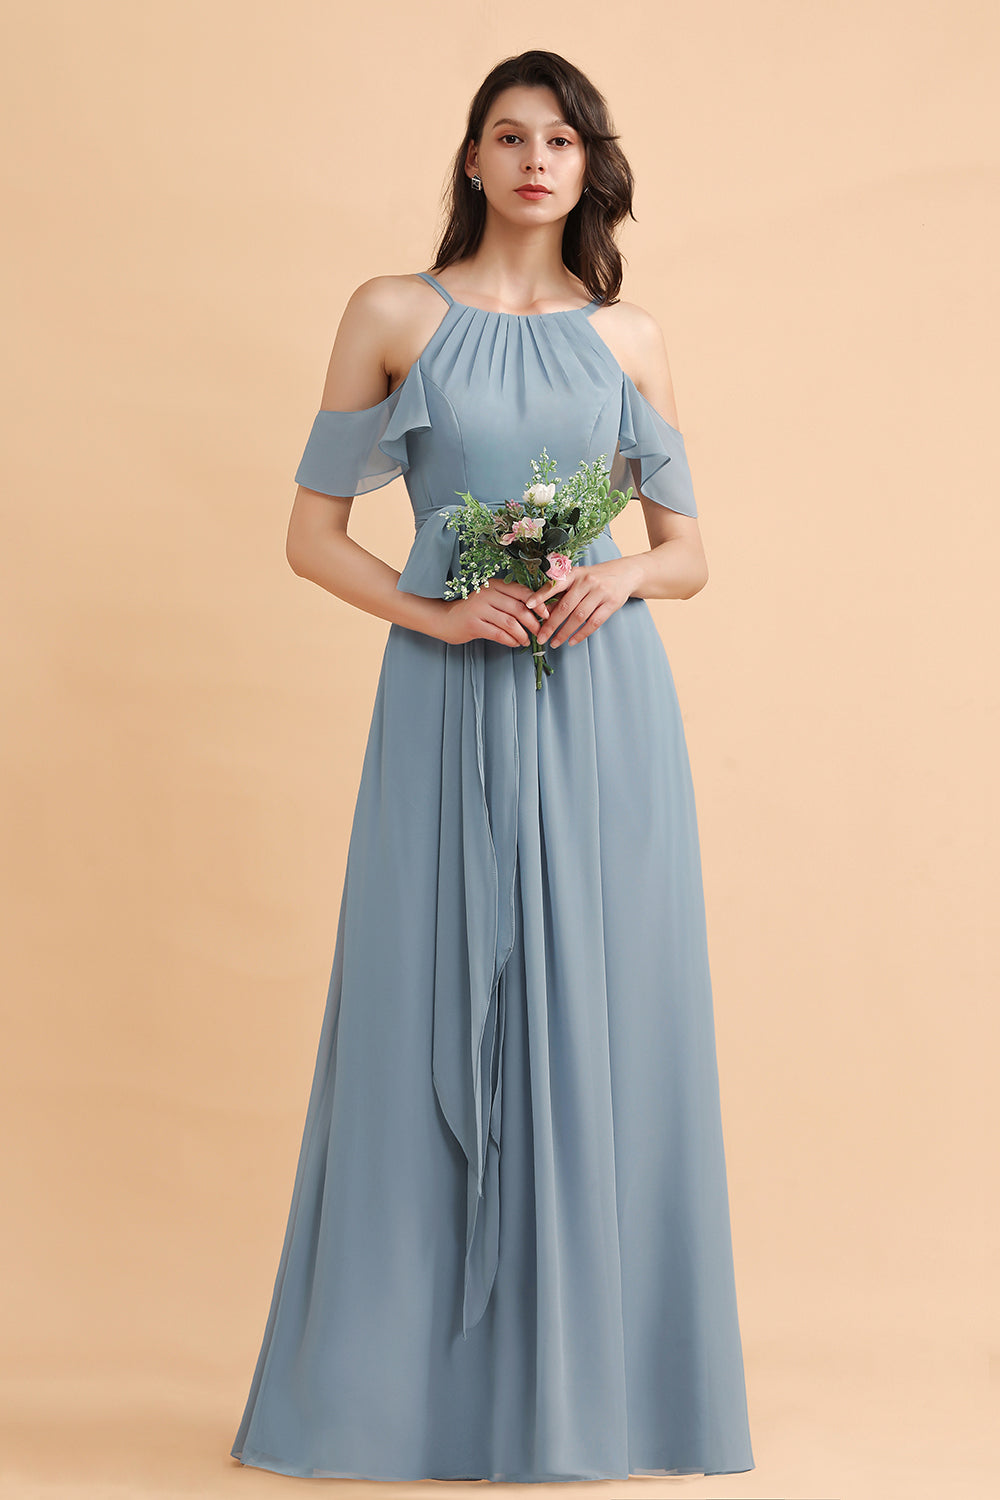 Finden Sie Stahlblau Brautjungfernkleider Günstig online bei babyonlinedress.de. Brautjungfernkleid Lang Chiffon online nach maß anfertigen.